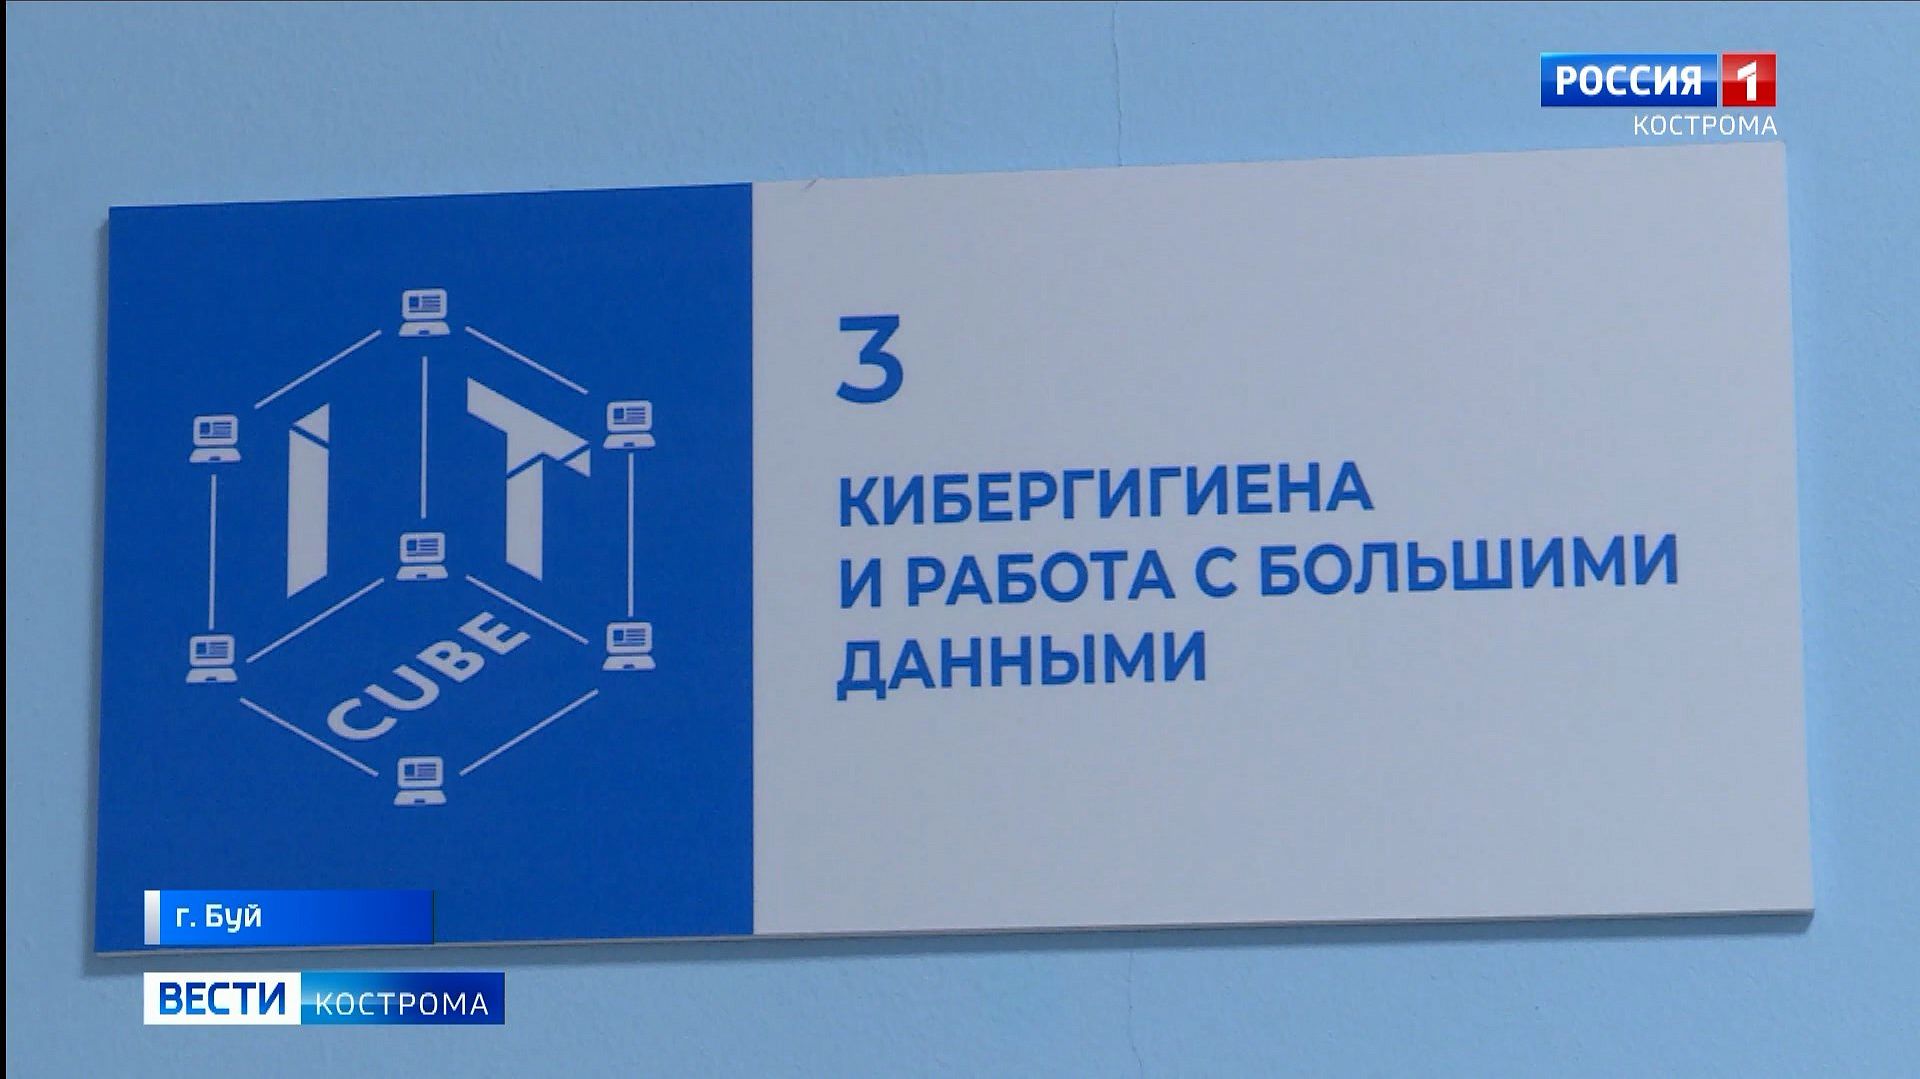 Второй IT-куб открылся в Костромской области 